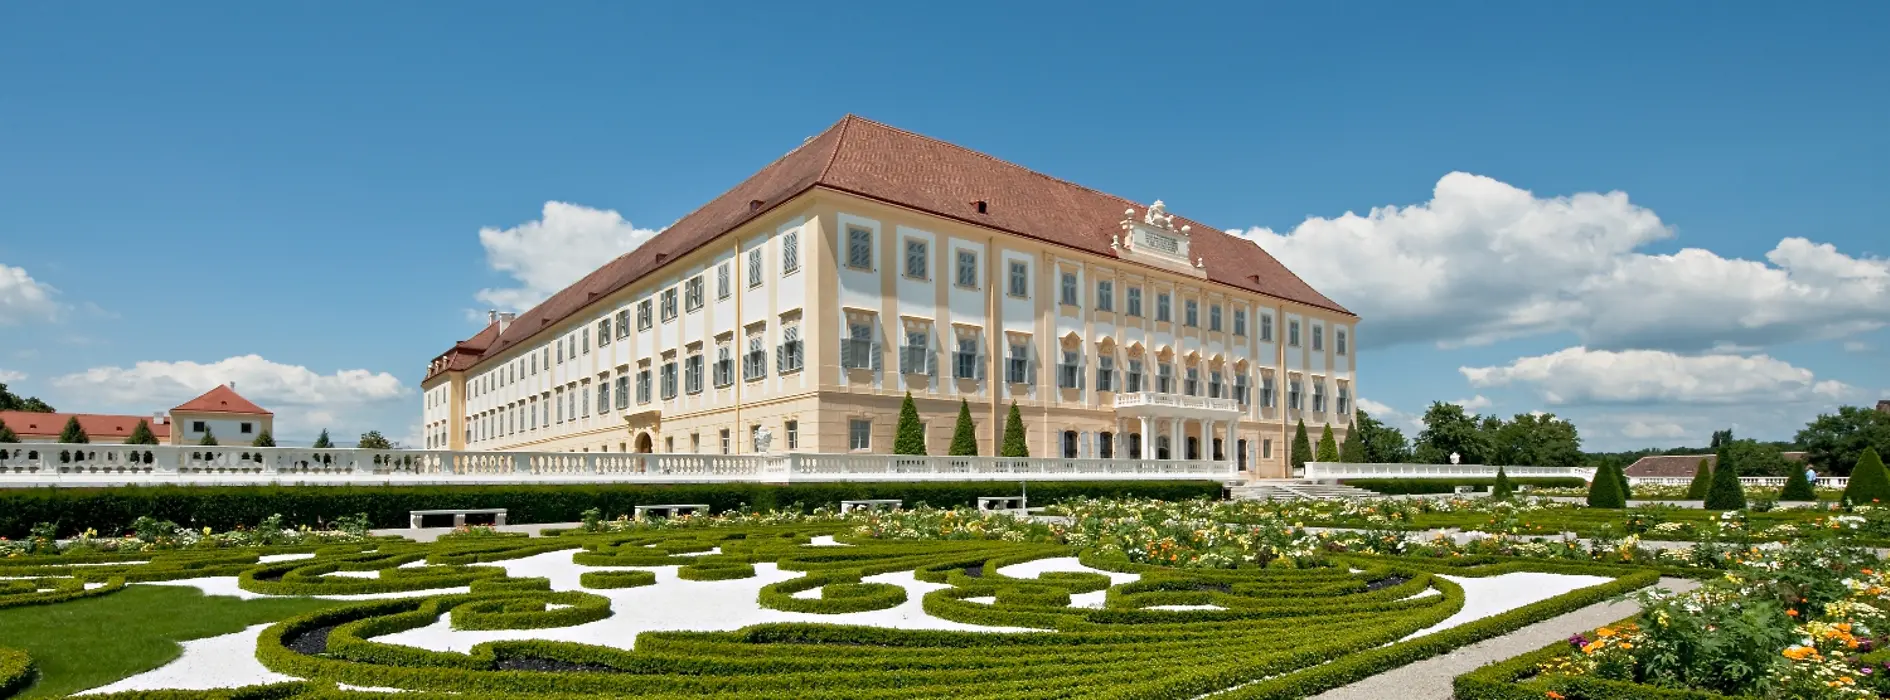 Vue de côté du Schloss Hof